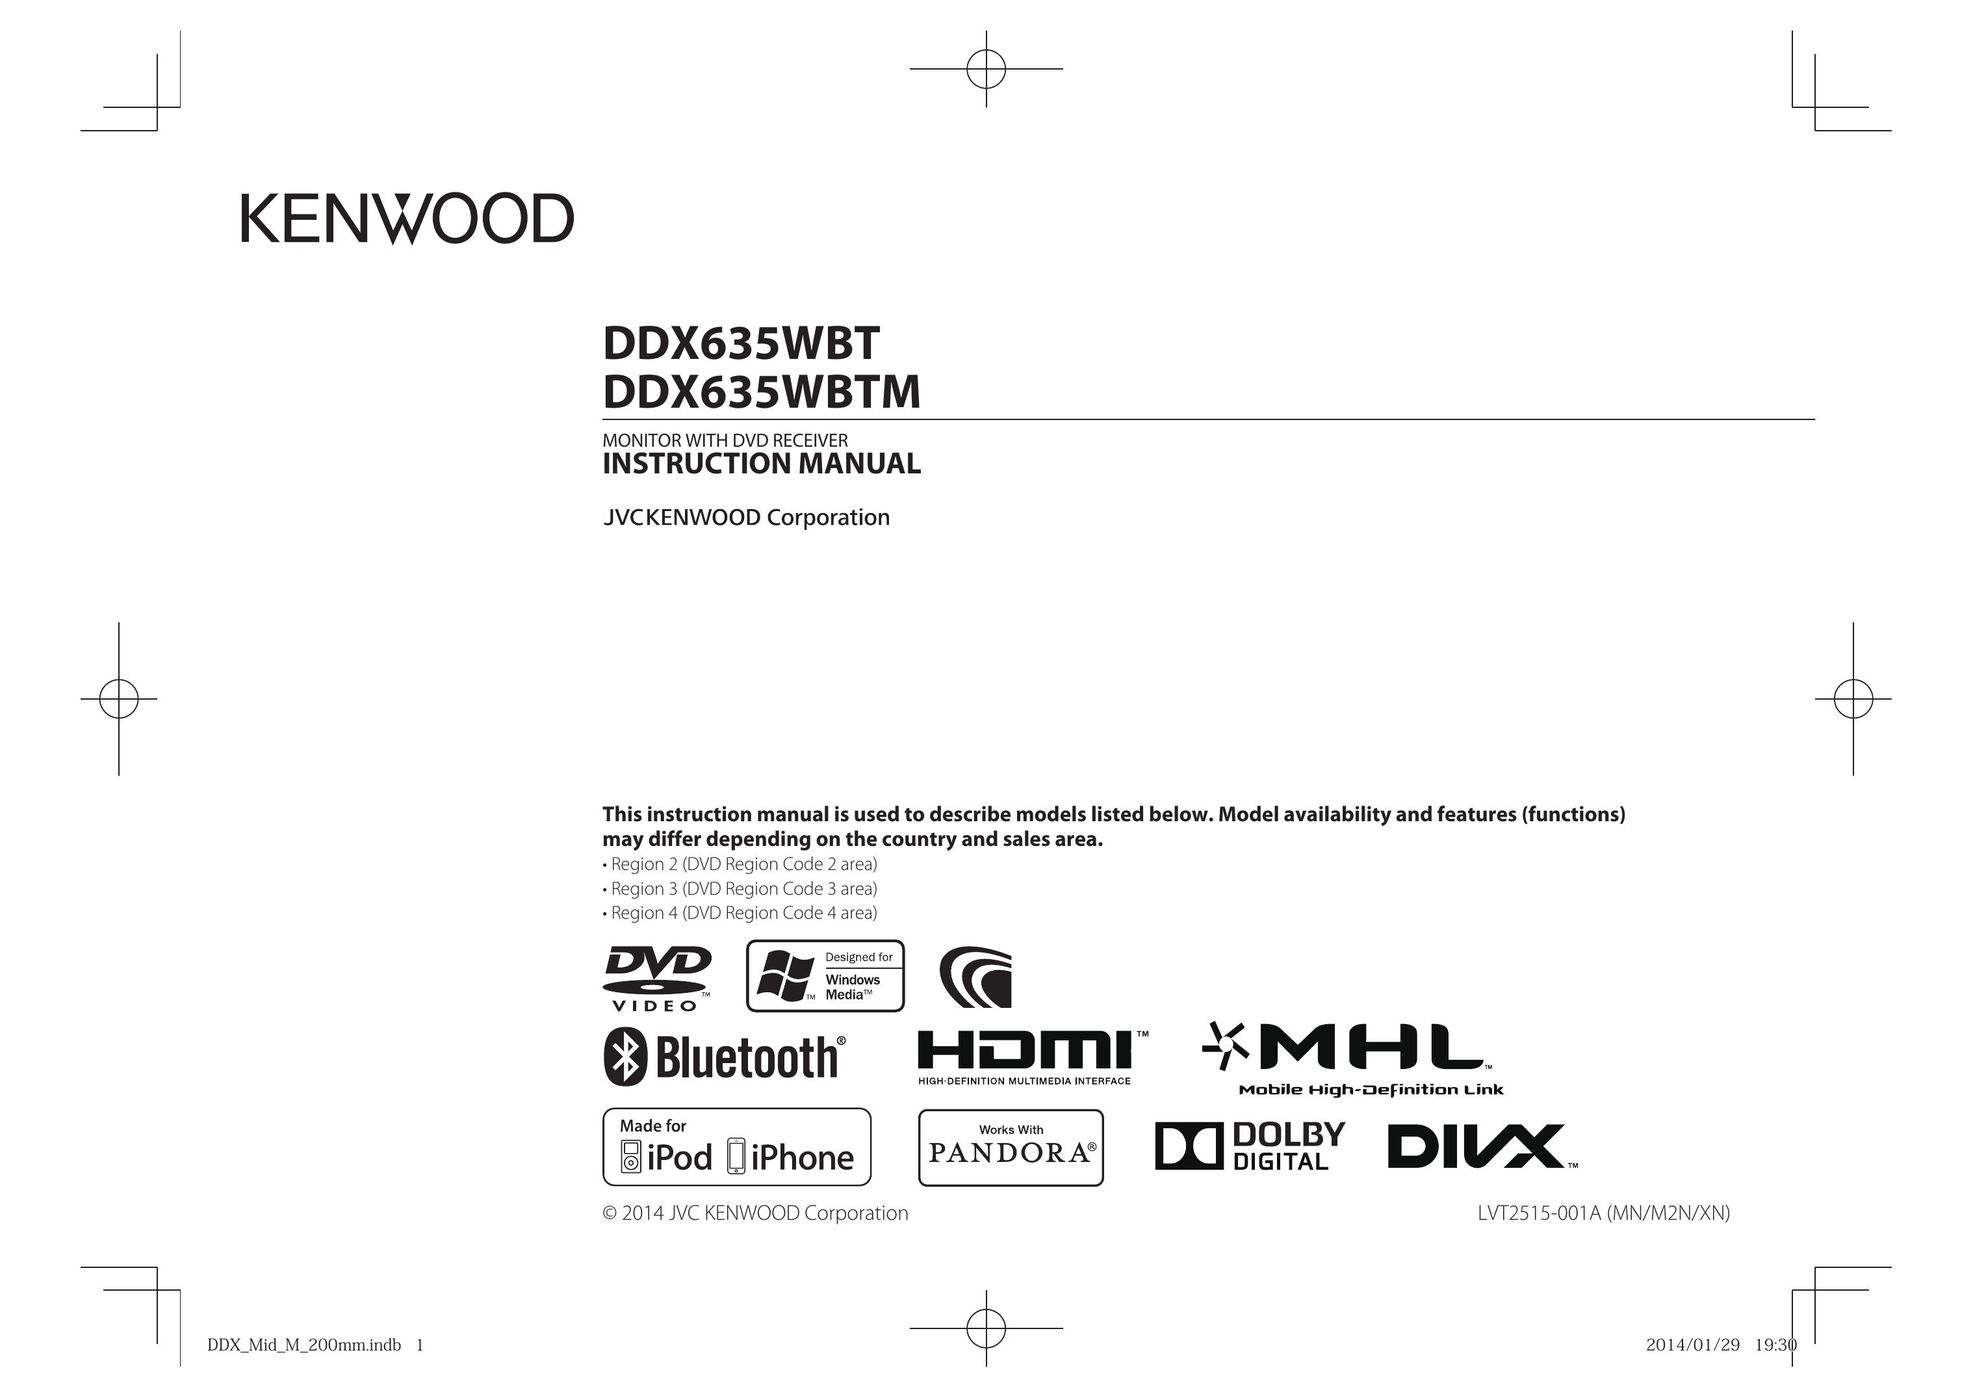 Kenwood DDX635WBTM Car Video System User Manual